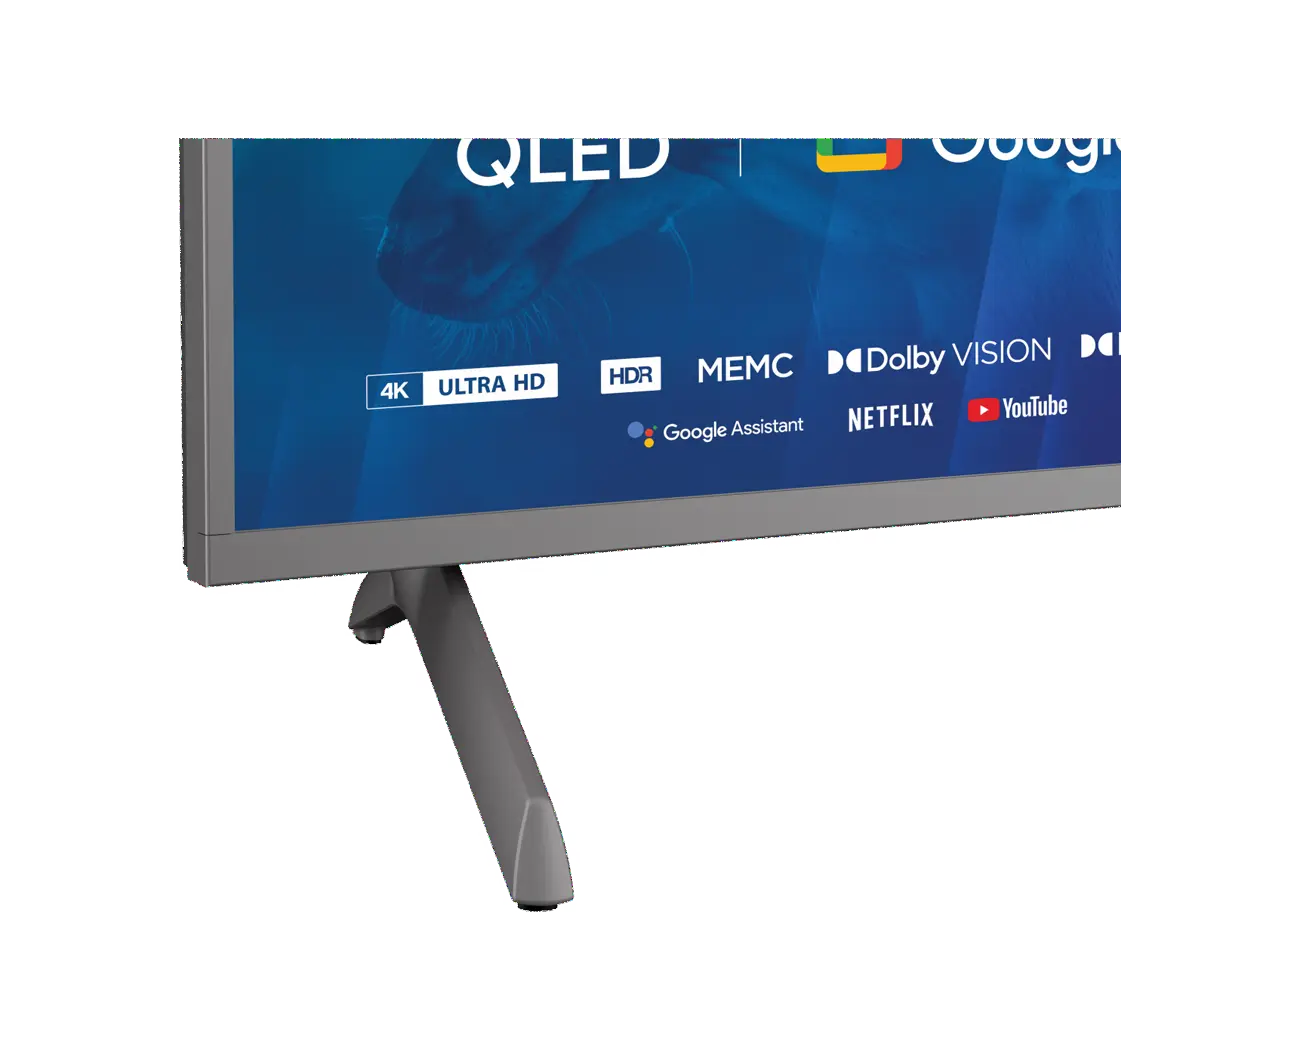 UHD 4K Google TV Blaupunkt 75QBG8000